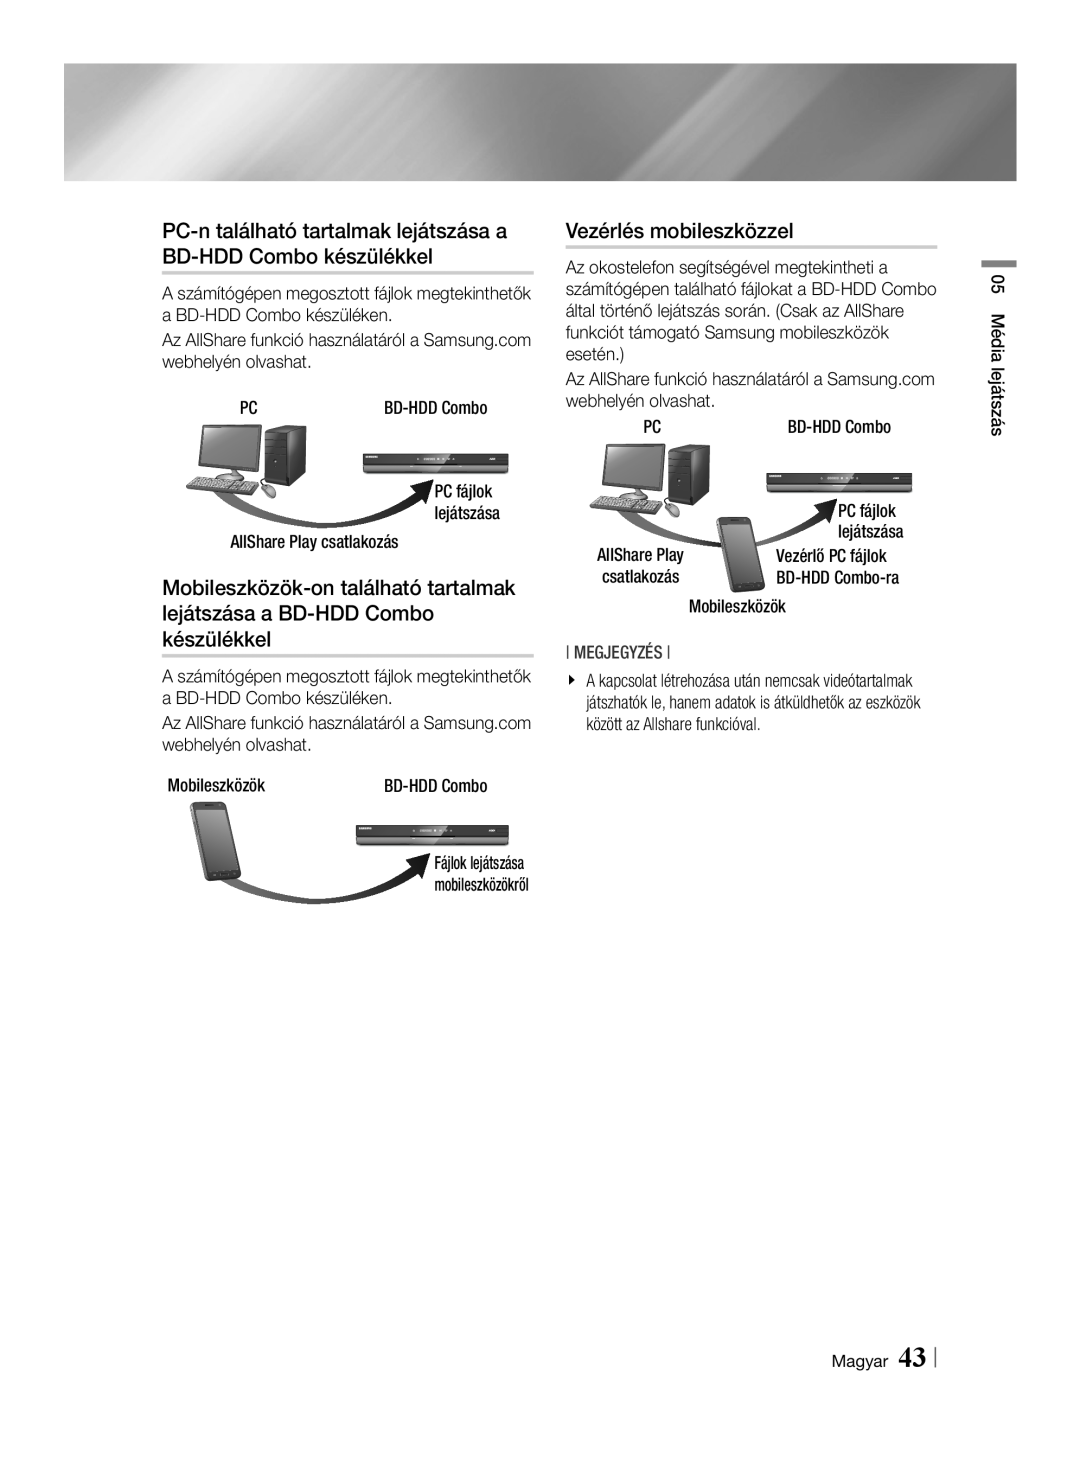 Samsung BD-E8500/EN PC-n található tartalmak lejátszása a BD-HDD Combo készülékkel, Vezérlés mobileszközzel, Megjegyzés 